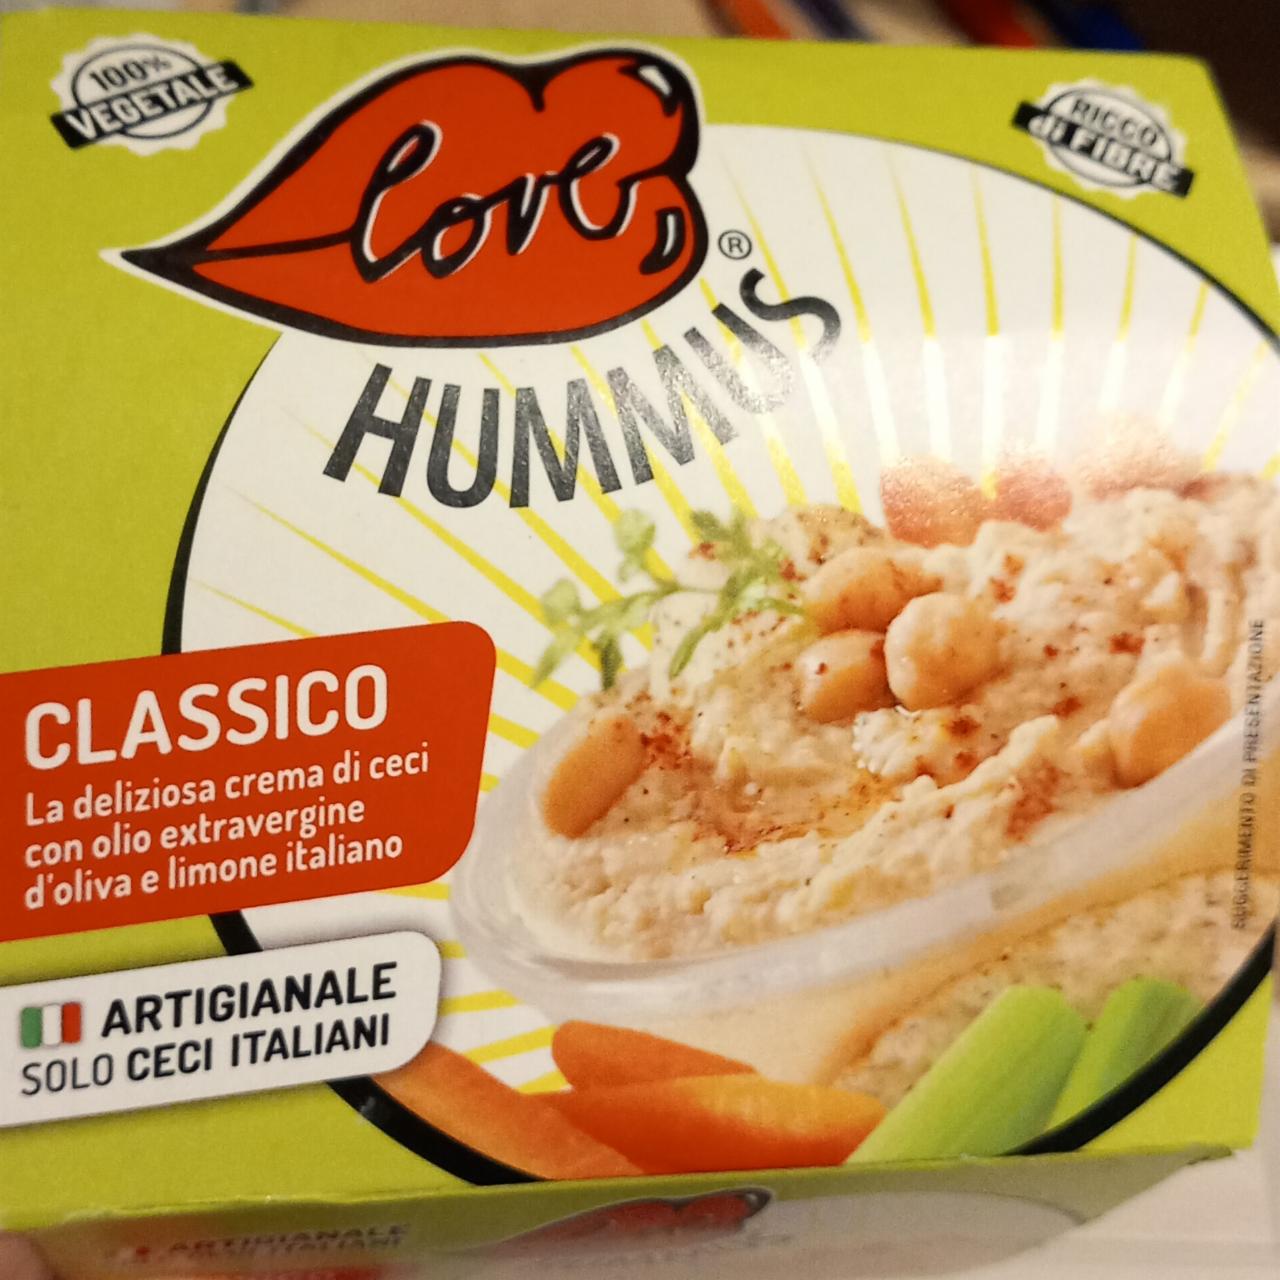 Fotografie - love Hummus Classico Ricco